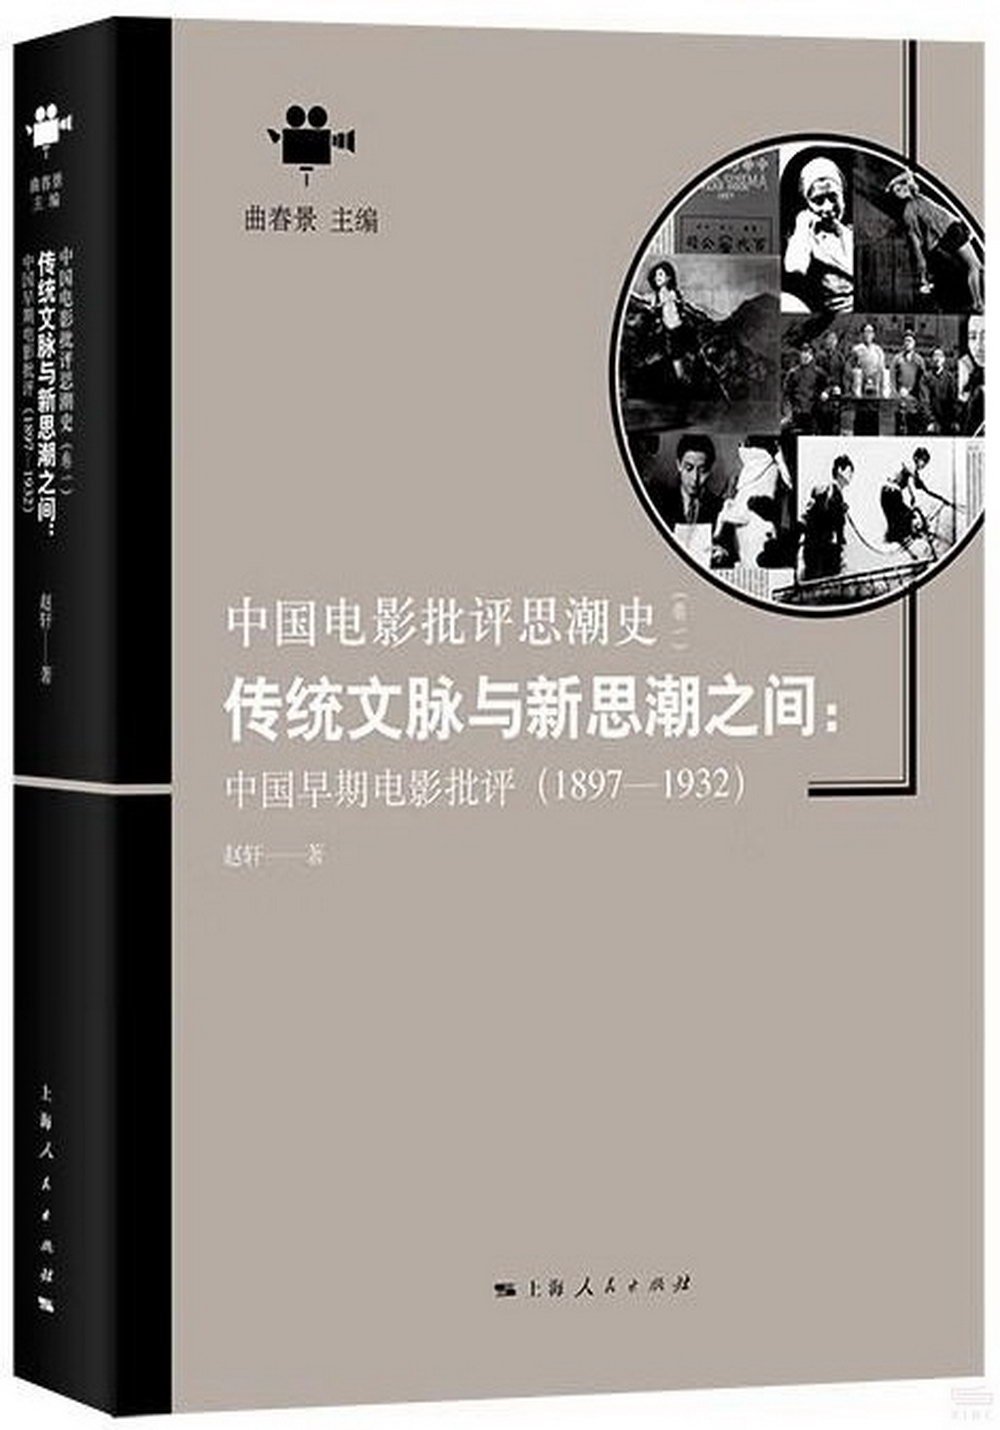 傳統文脈與新思潮之間：中國早期電影批評(1897-1932)